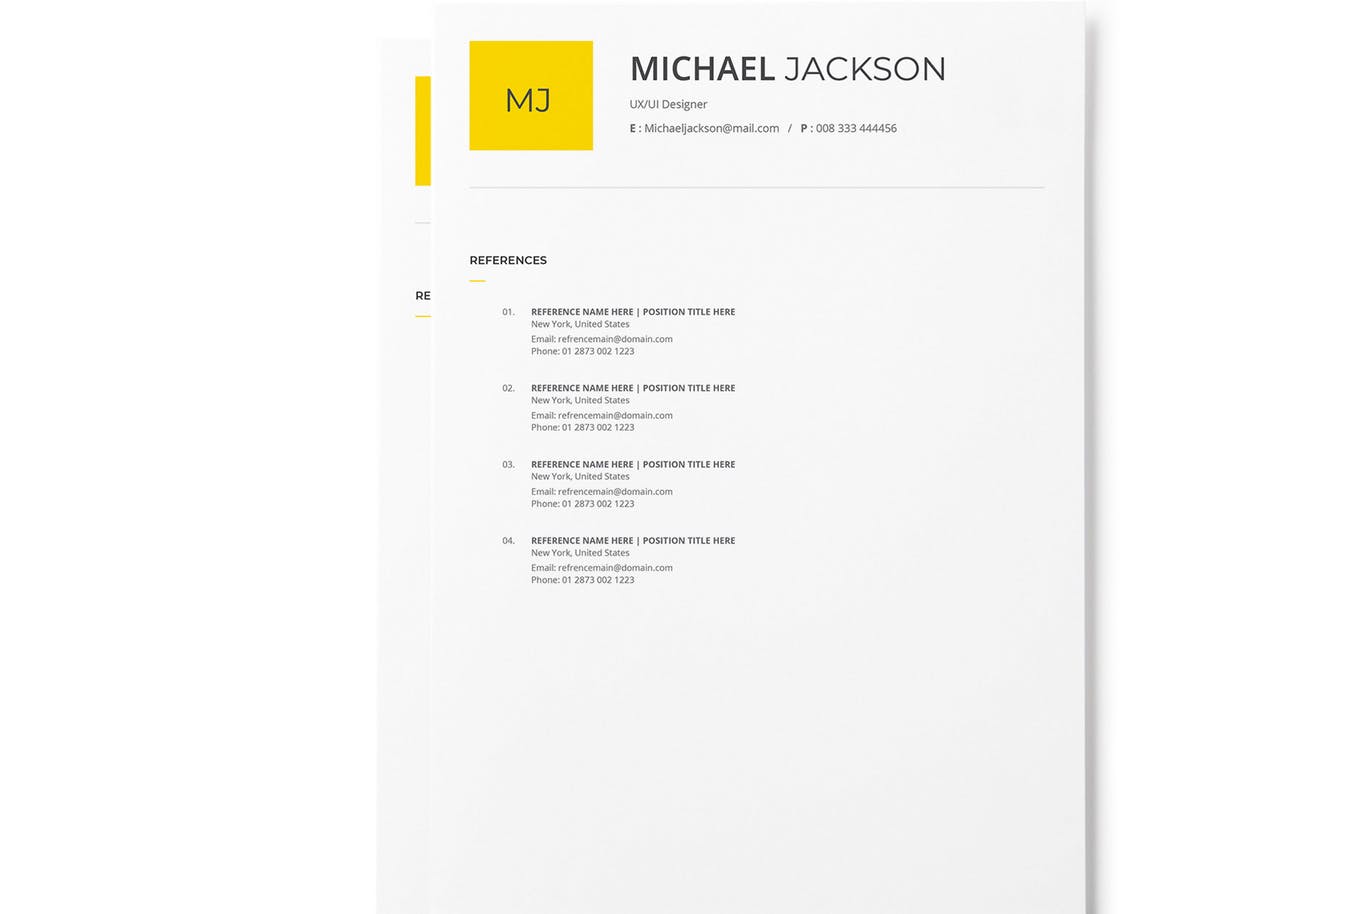 极简设计风格个人电子简历&介绍信设计模板 Minimal Resume And Cover Letter With Yellow Acsen插图(2)